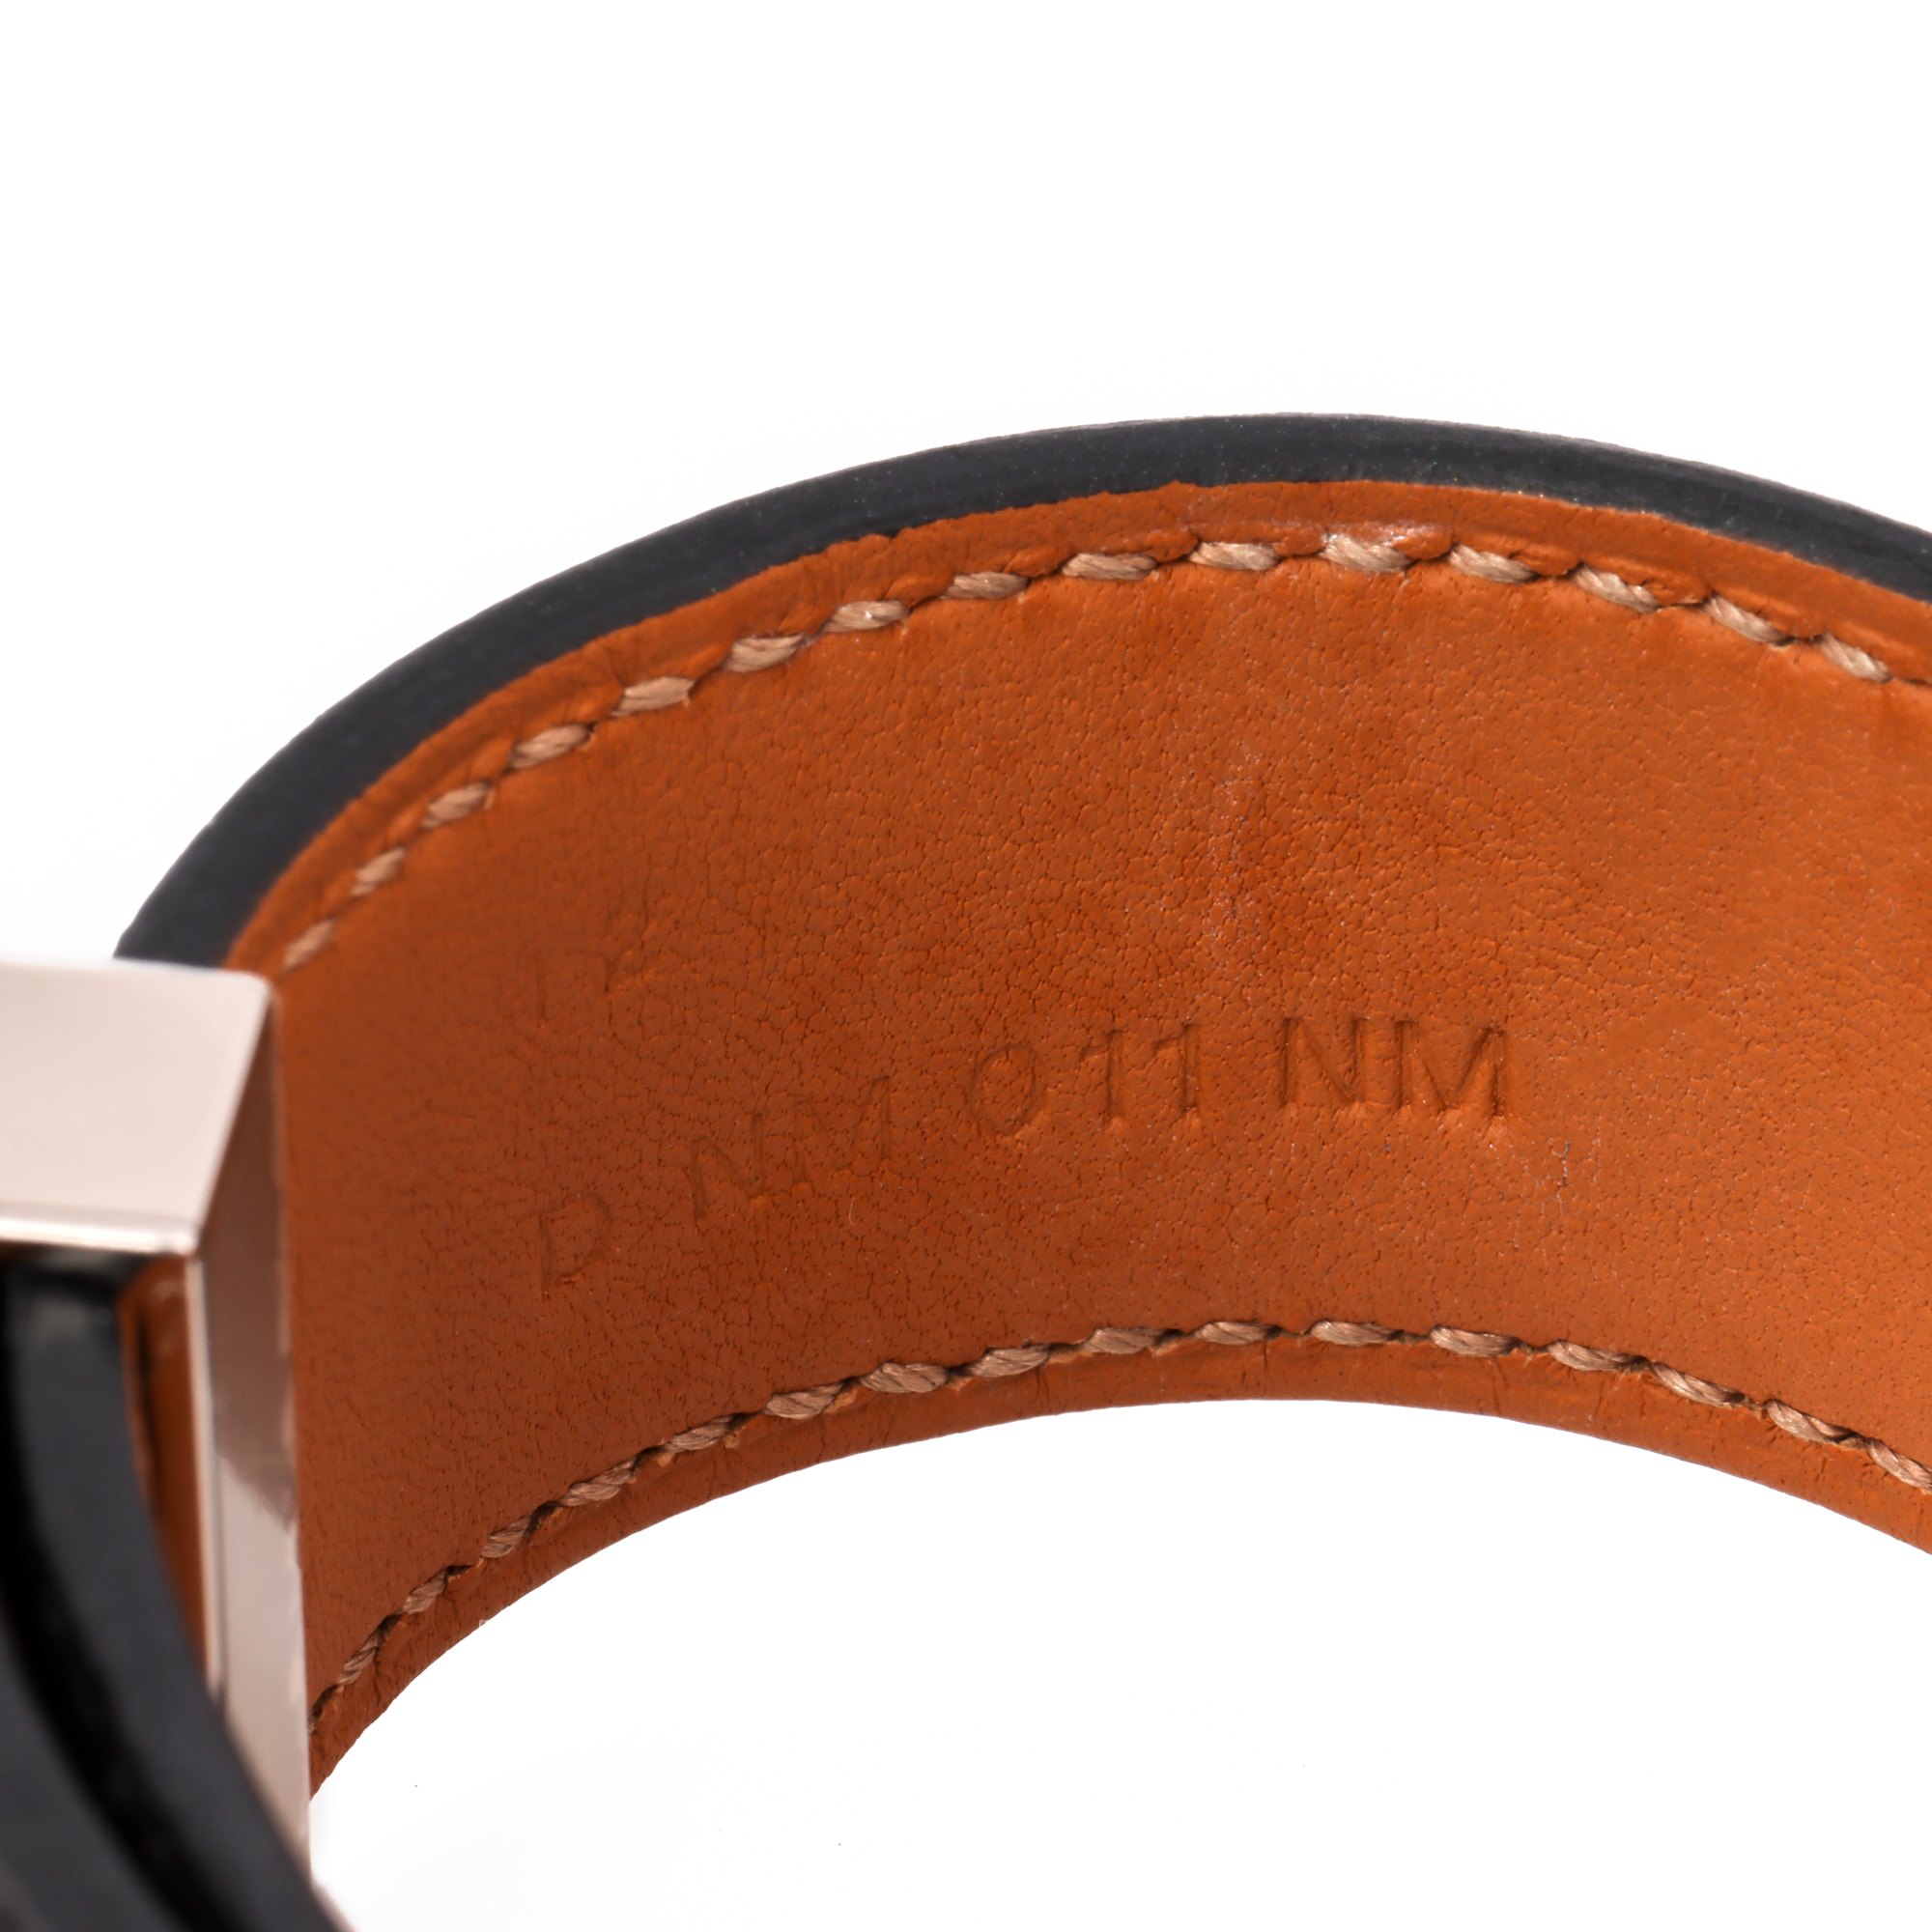 Hermès Collier de Chien 24 Bracelet